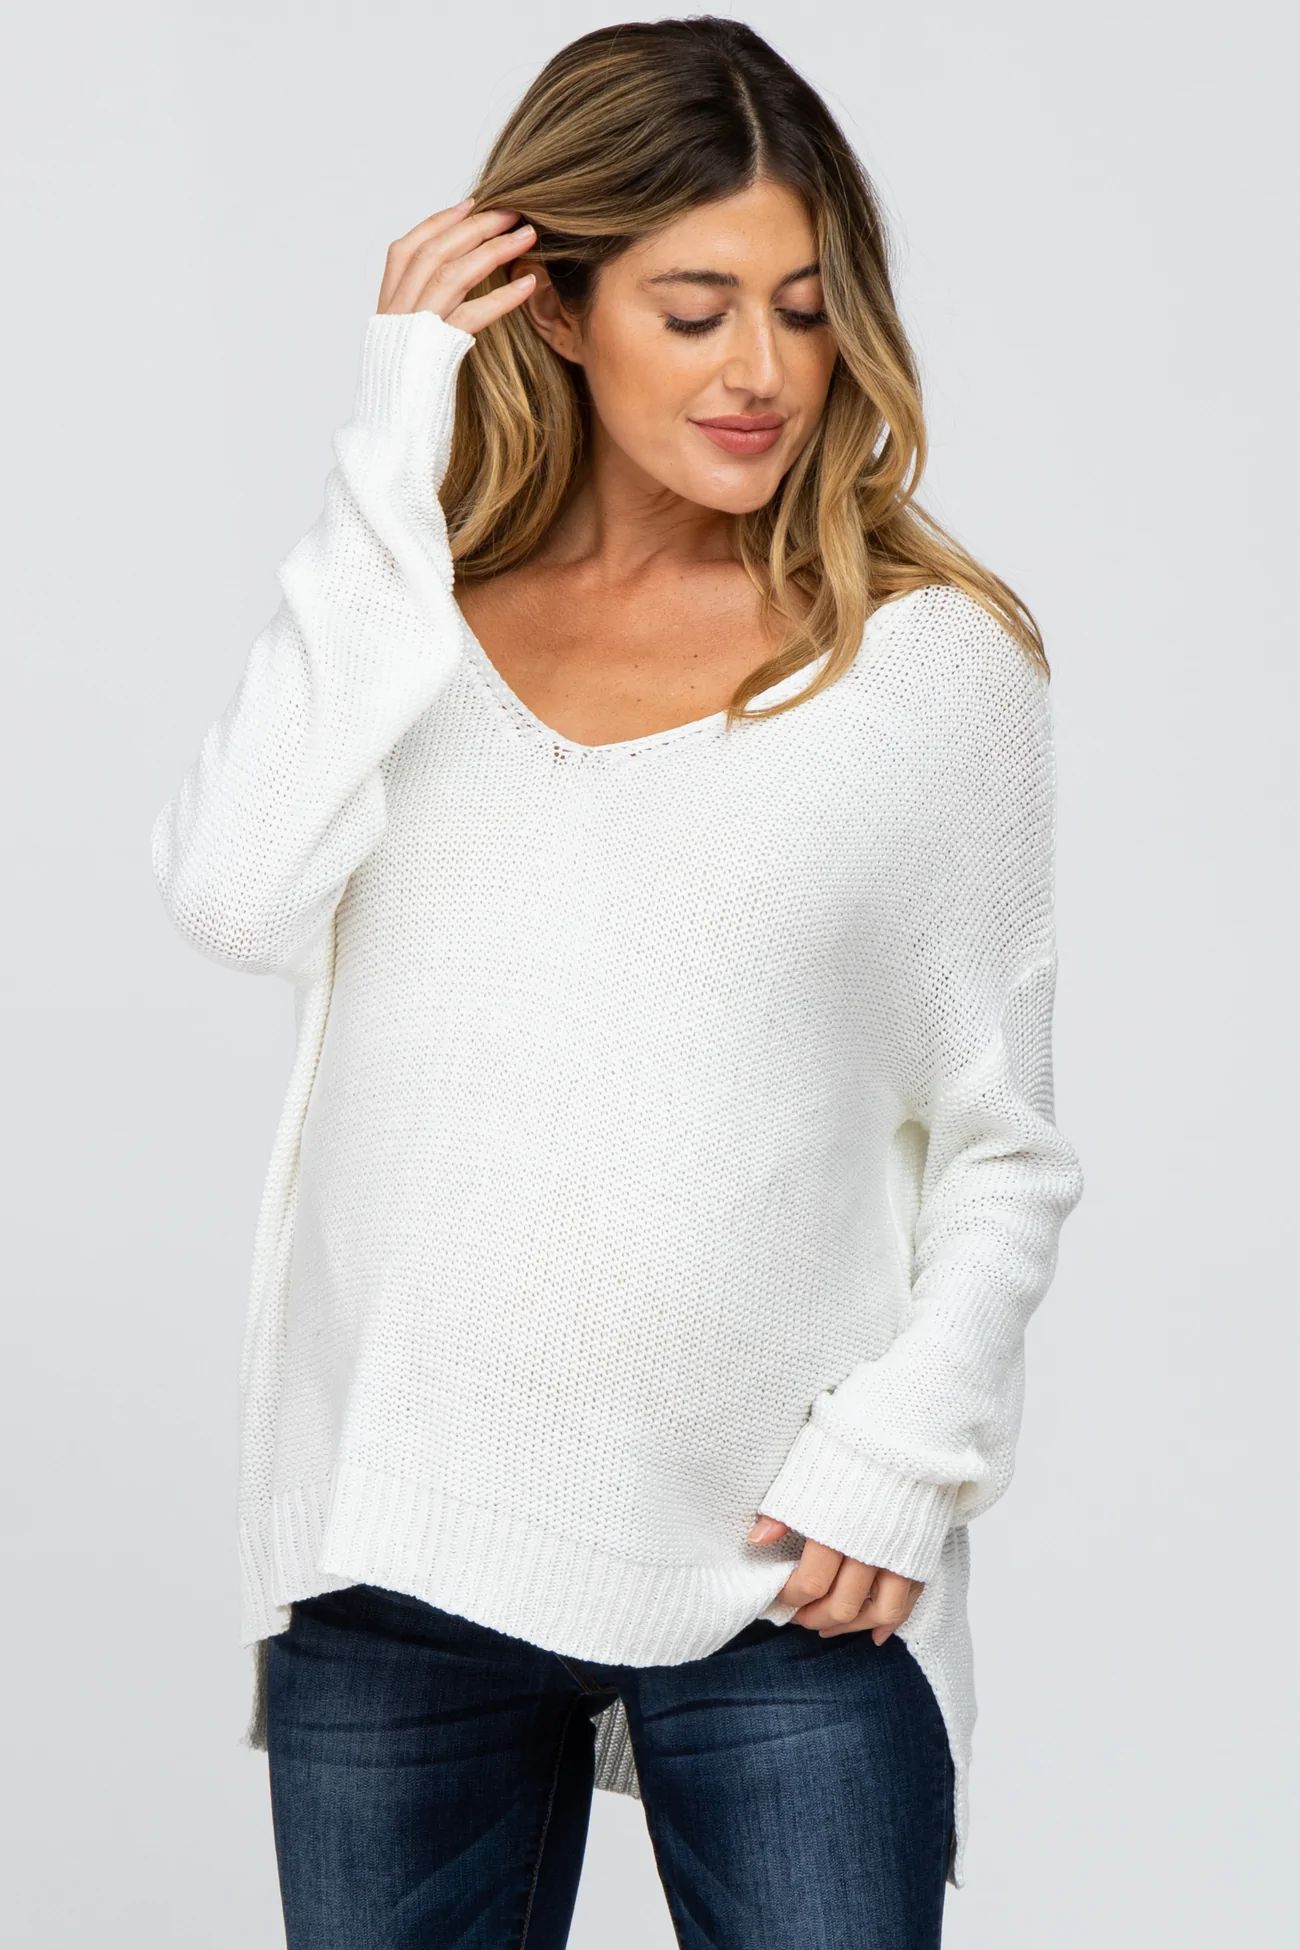 White Side Slit Knit Maternity Sweater | PinkBlush Maternity